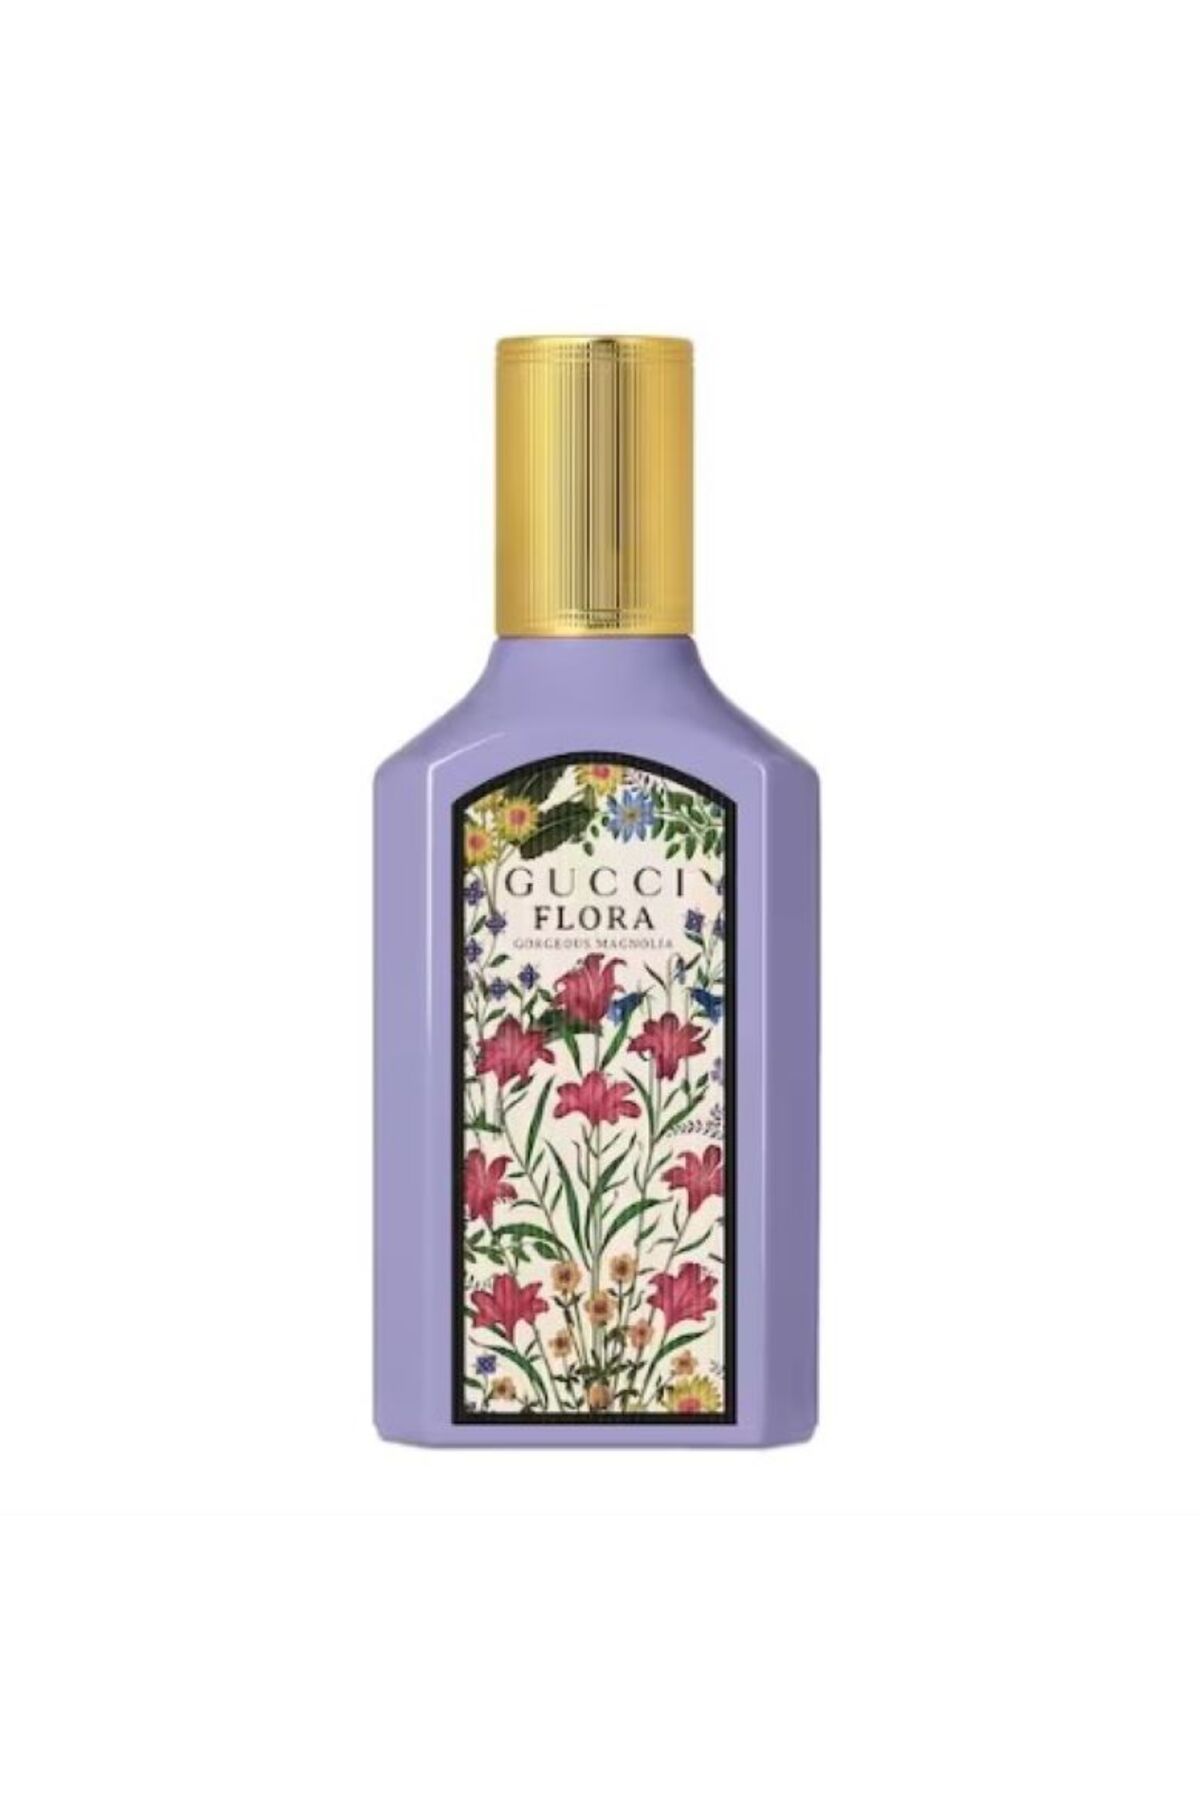 Gucci Flora Gorgeous Magnolia - Eau de Parfum 100ml